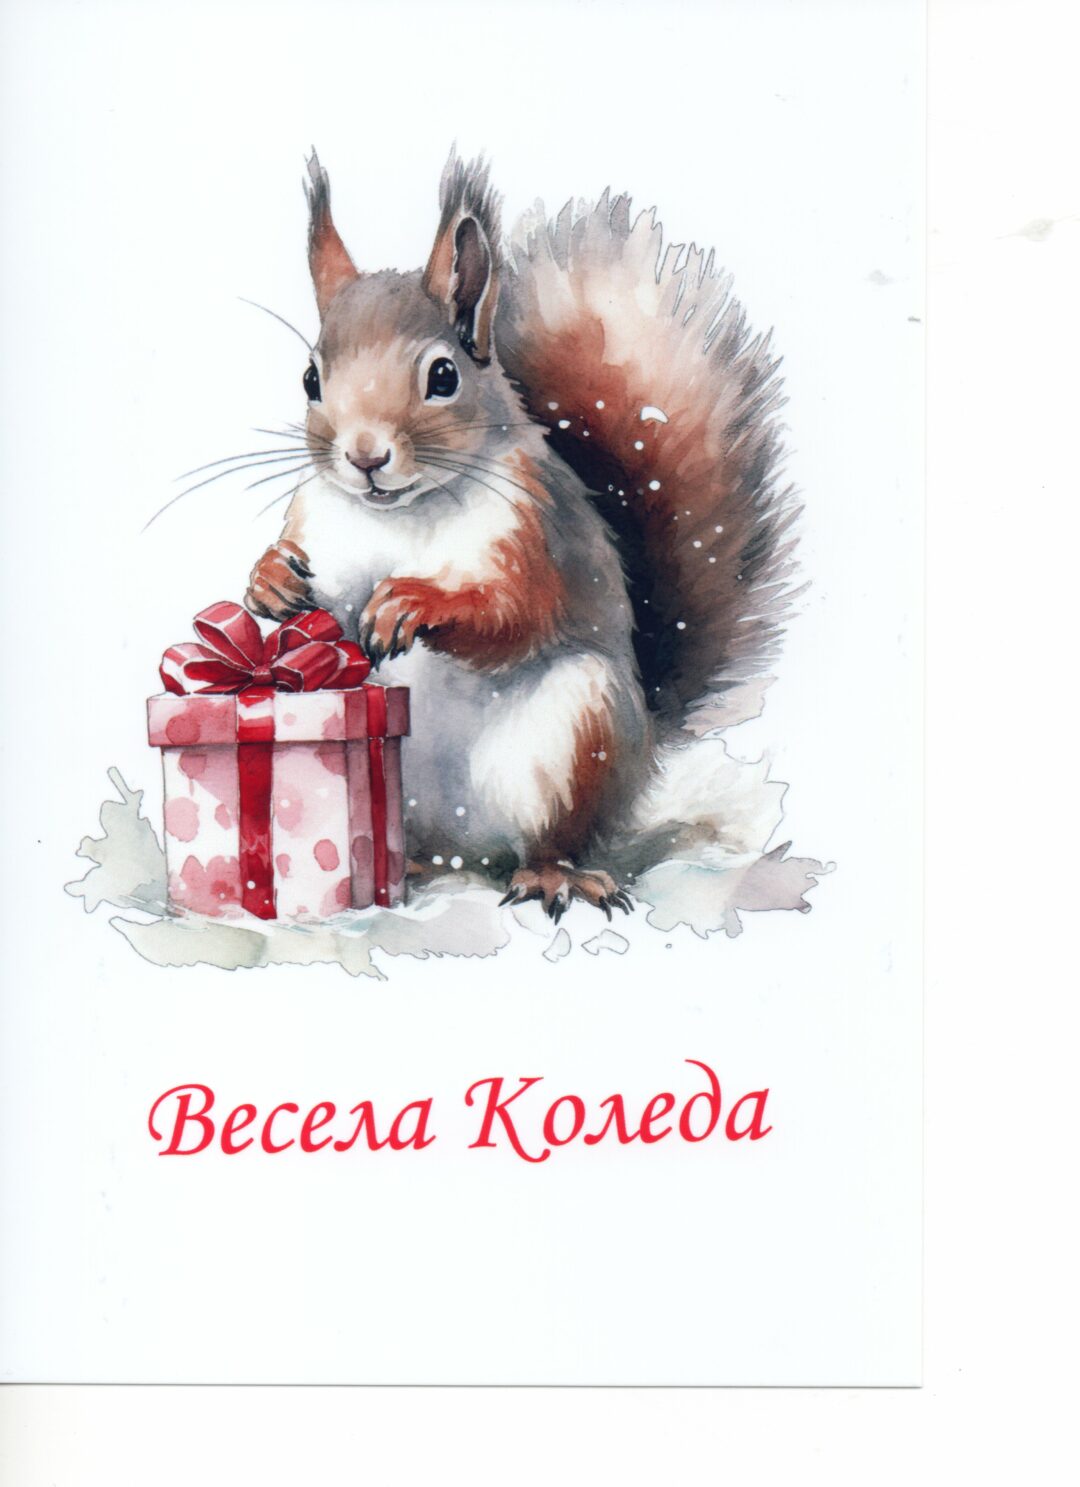 Персонализирана поздравителна картичка за Коледа.